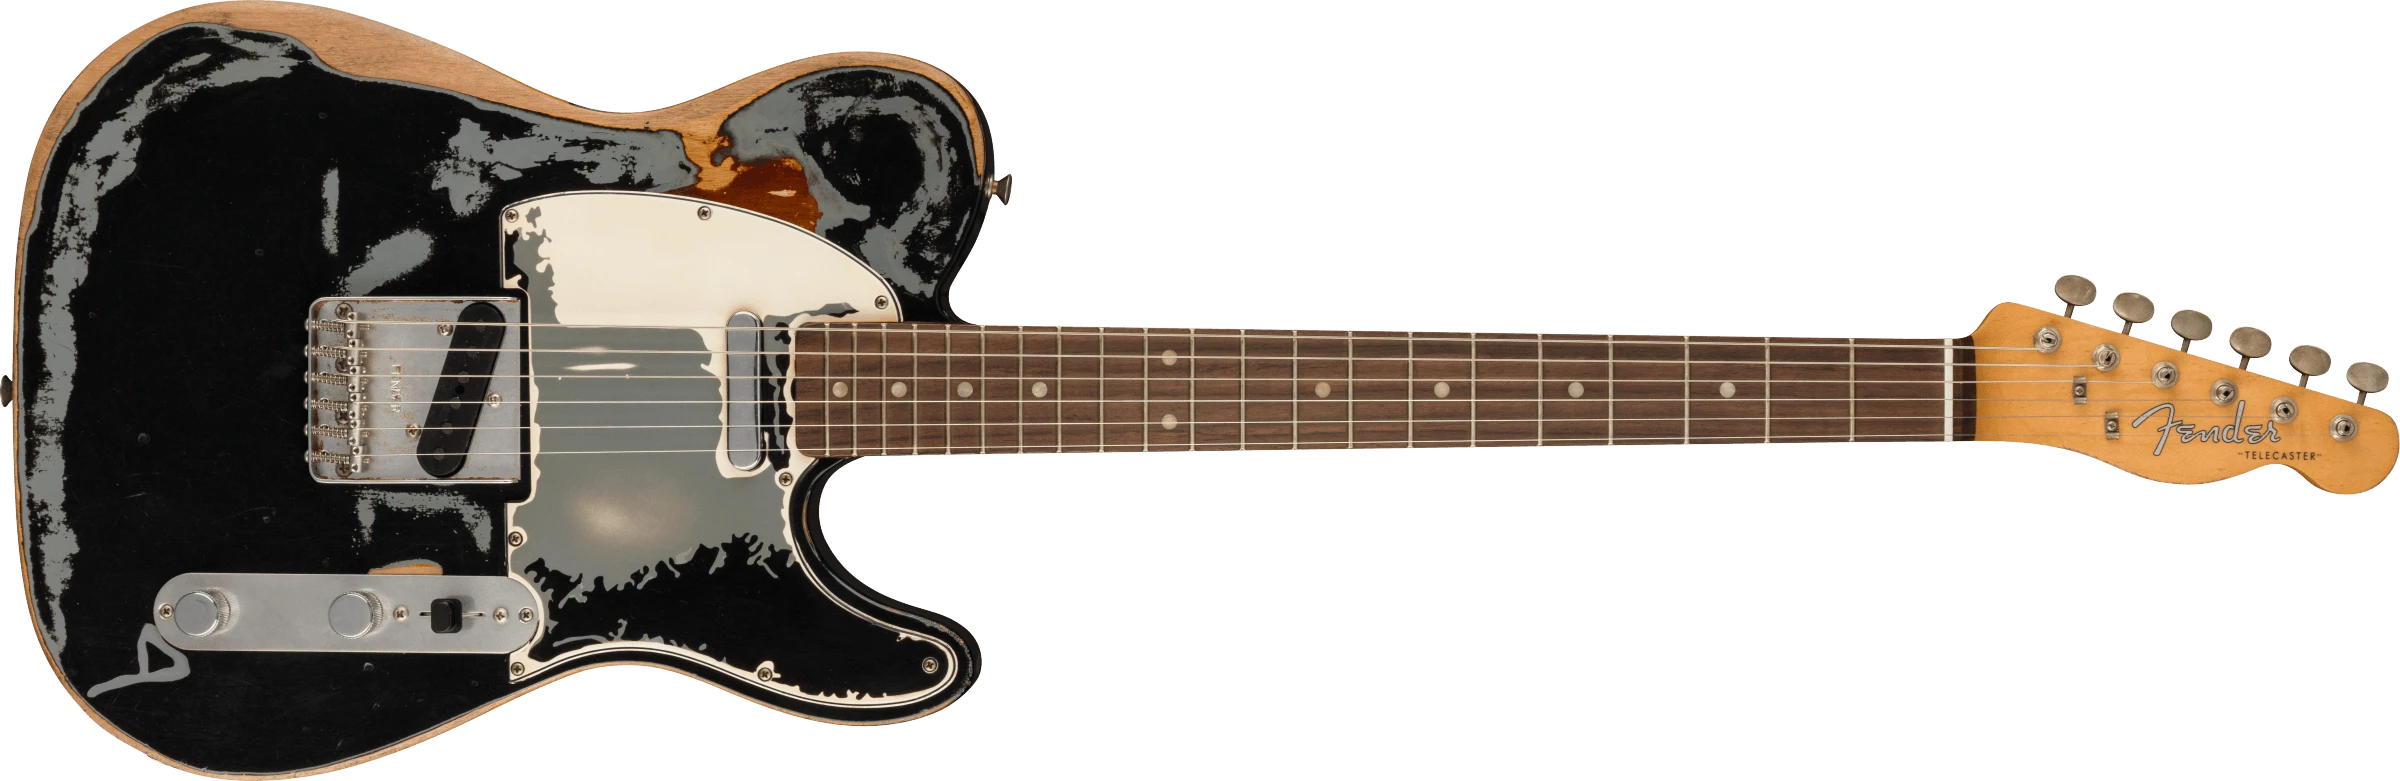 Fender Joe Strummer Telecaster®, Rosewood Fingerboard, Black